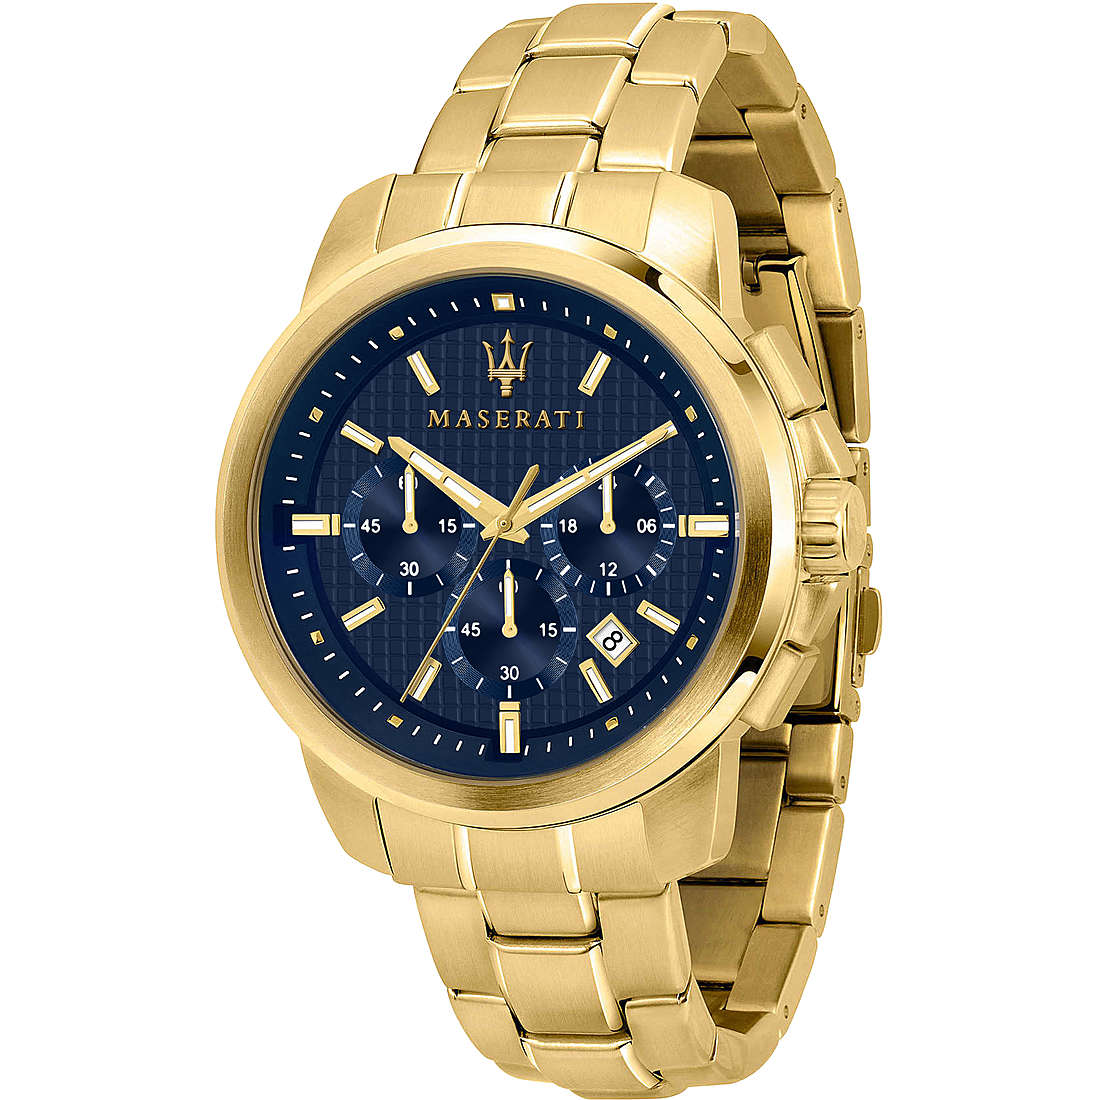 Maserati Successo orologio da uomo cronografo al quarzo con cassa e cinturino in acciaio con trattamento in pvd oro e quadrante blu - Codice orologio: R8873621021